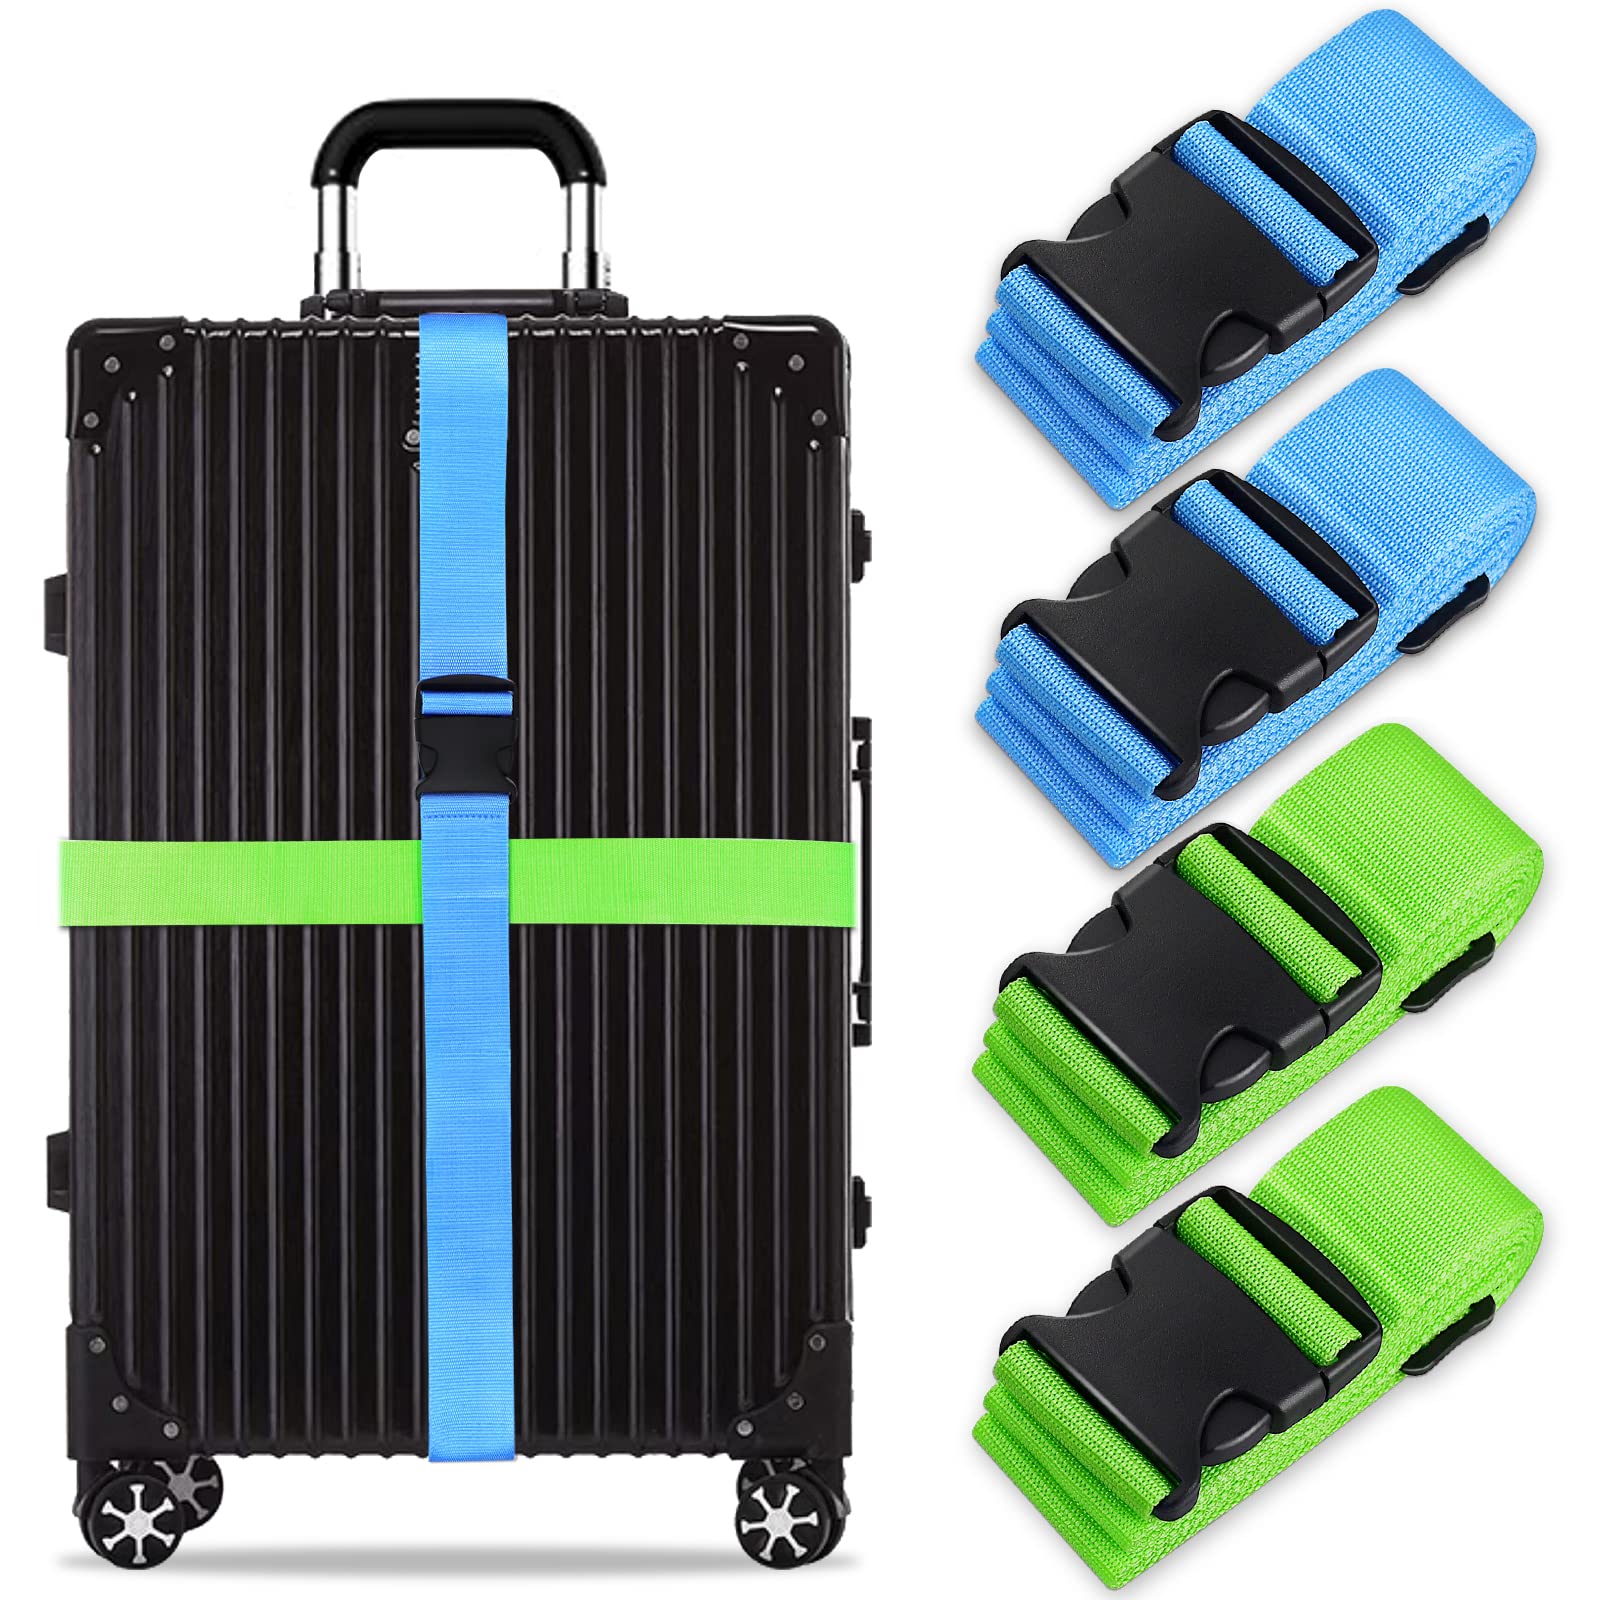 Koffergurt Set, gepäckband, kofferbänder, koffergurte Personalisierte Identifikation Verstellbare Rutschfestes Reisezube (Blau Grün, 4 Stück Set) von Grantop